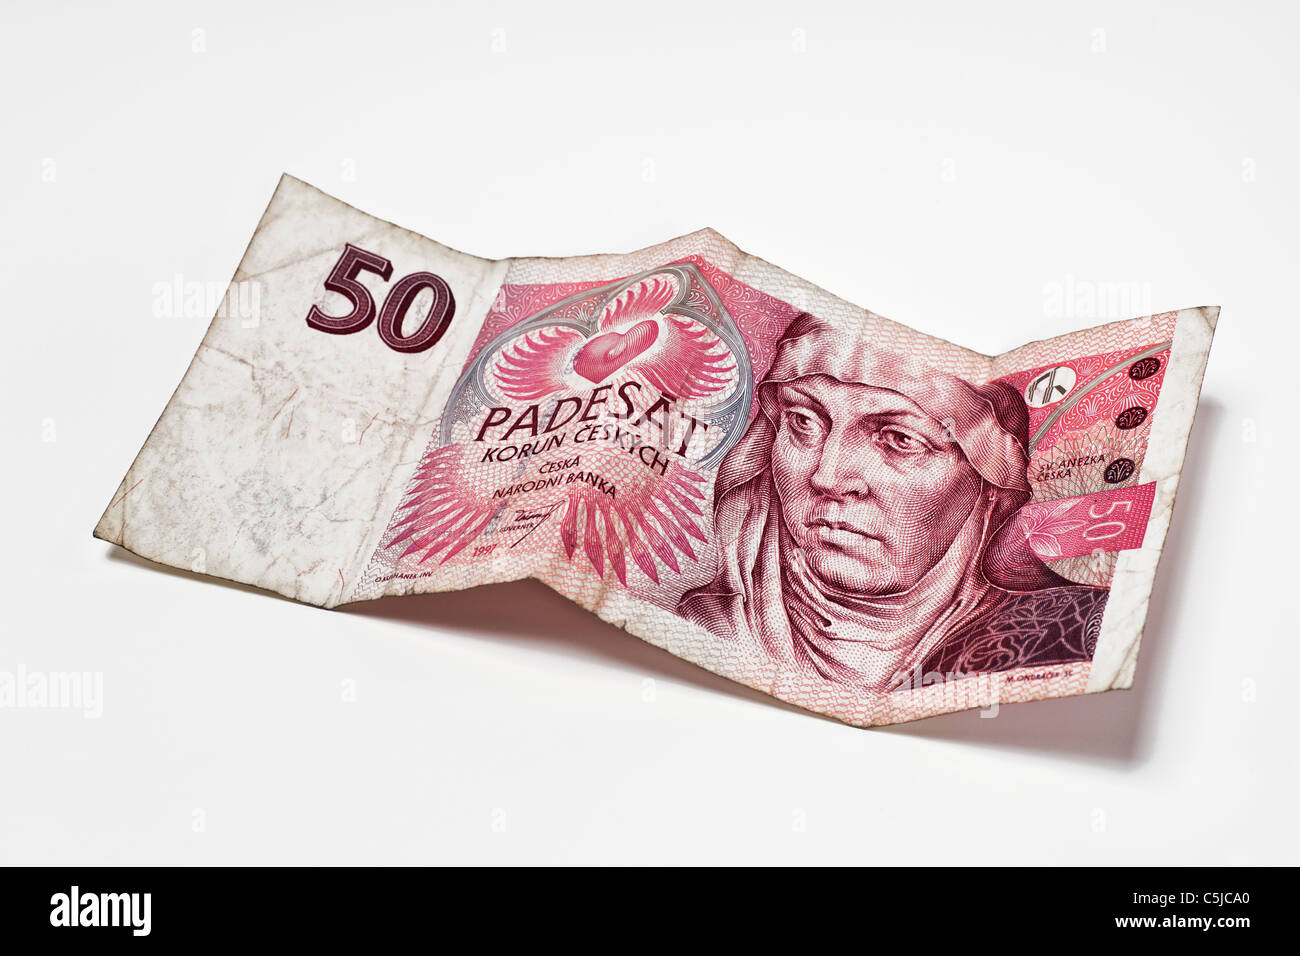 Detailansicht einer tschechischen 50 Kronen Banknote | Detail photo of a czech 50 koruna Banknote Stock Photo